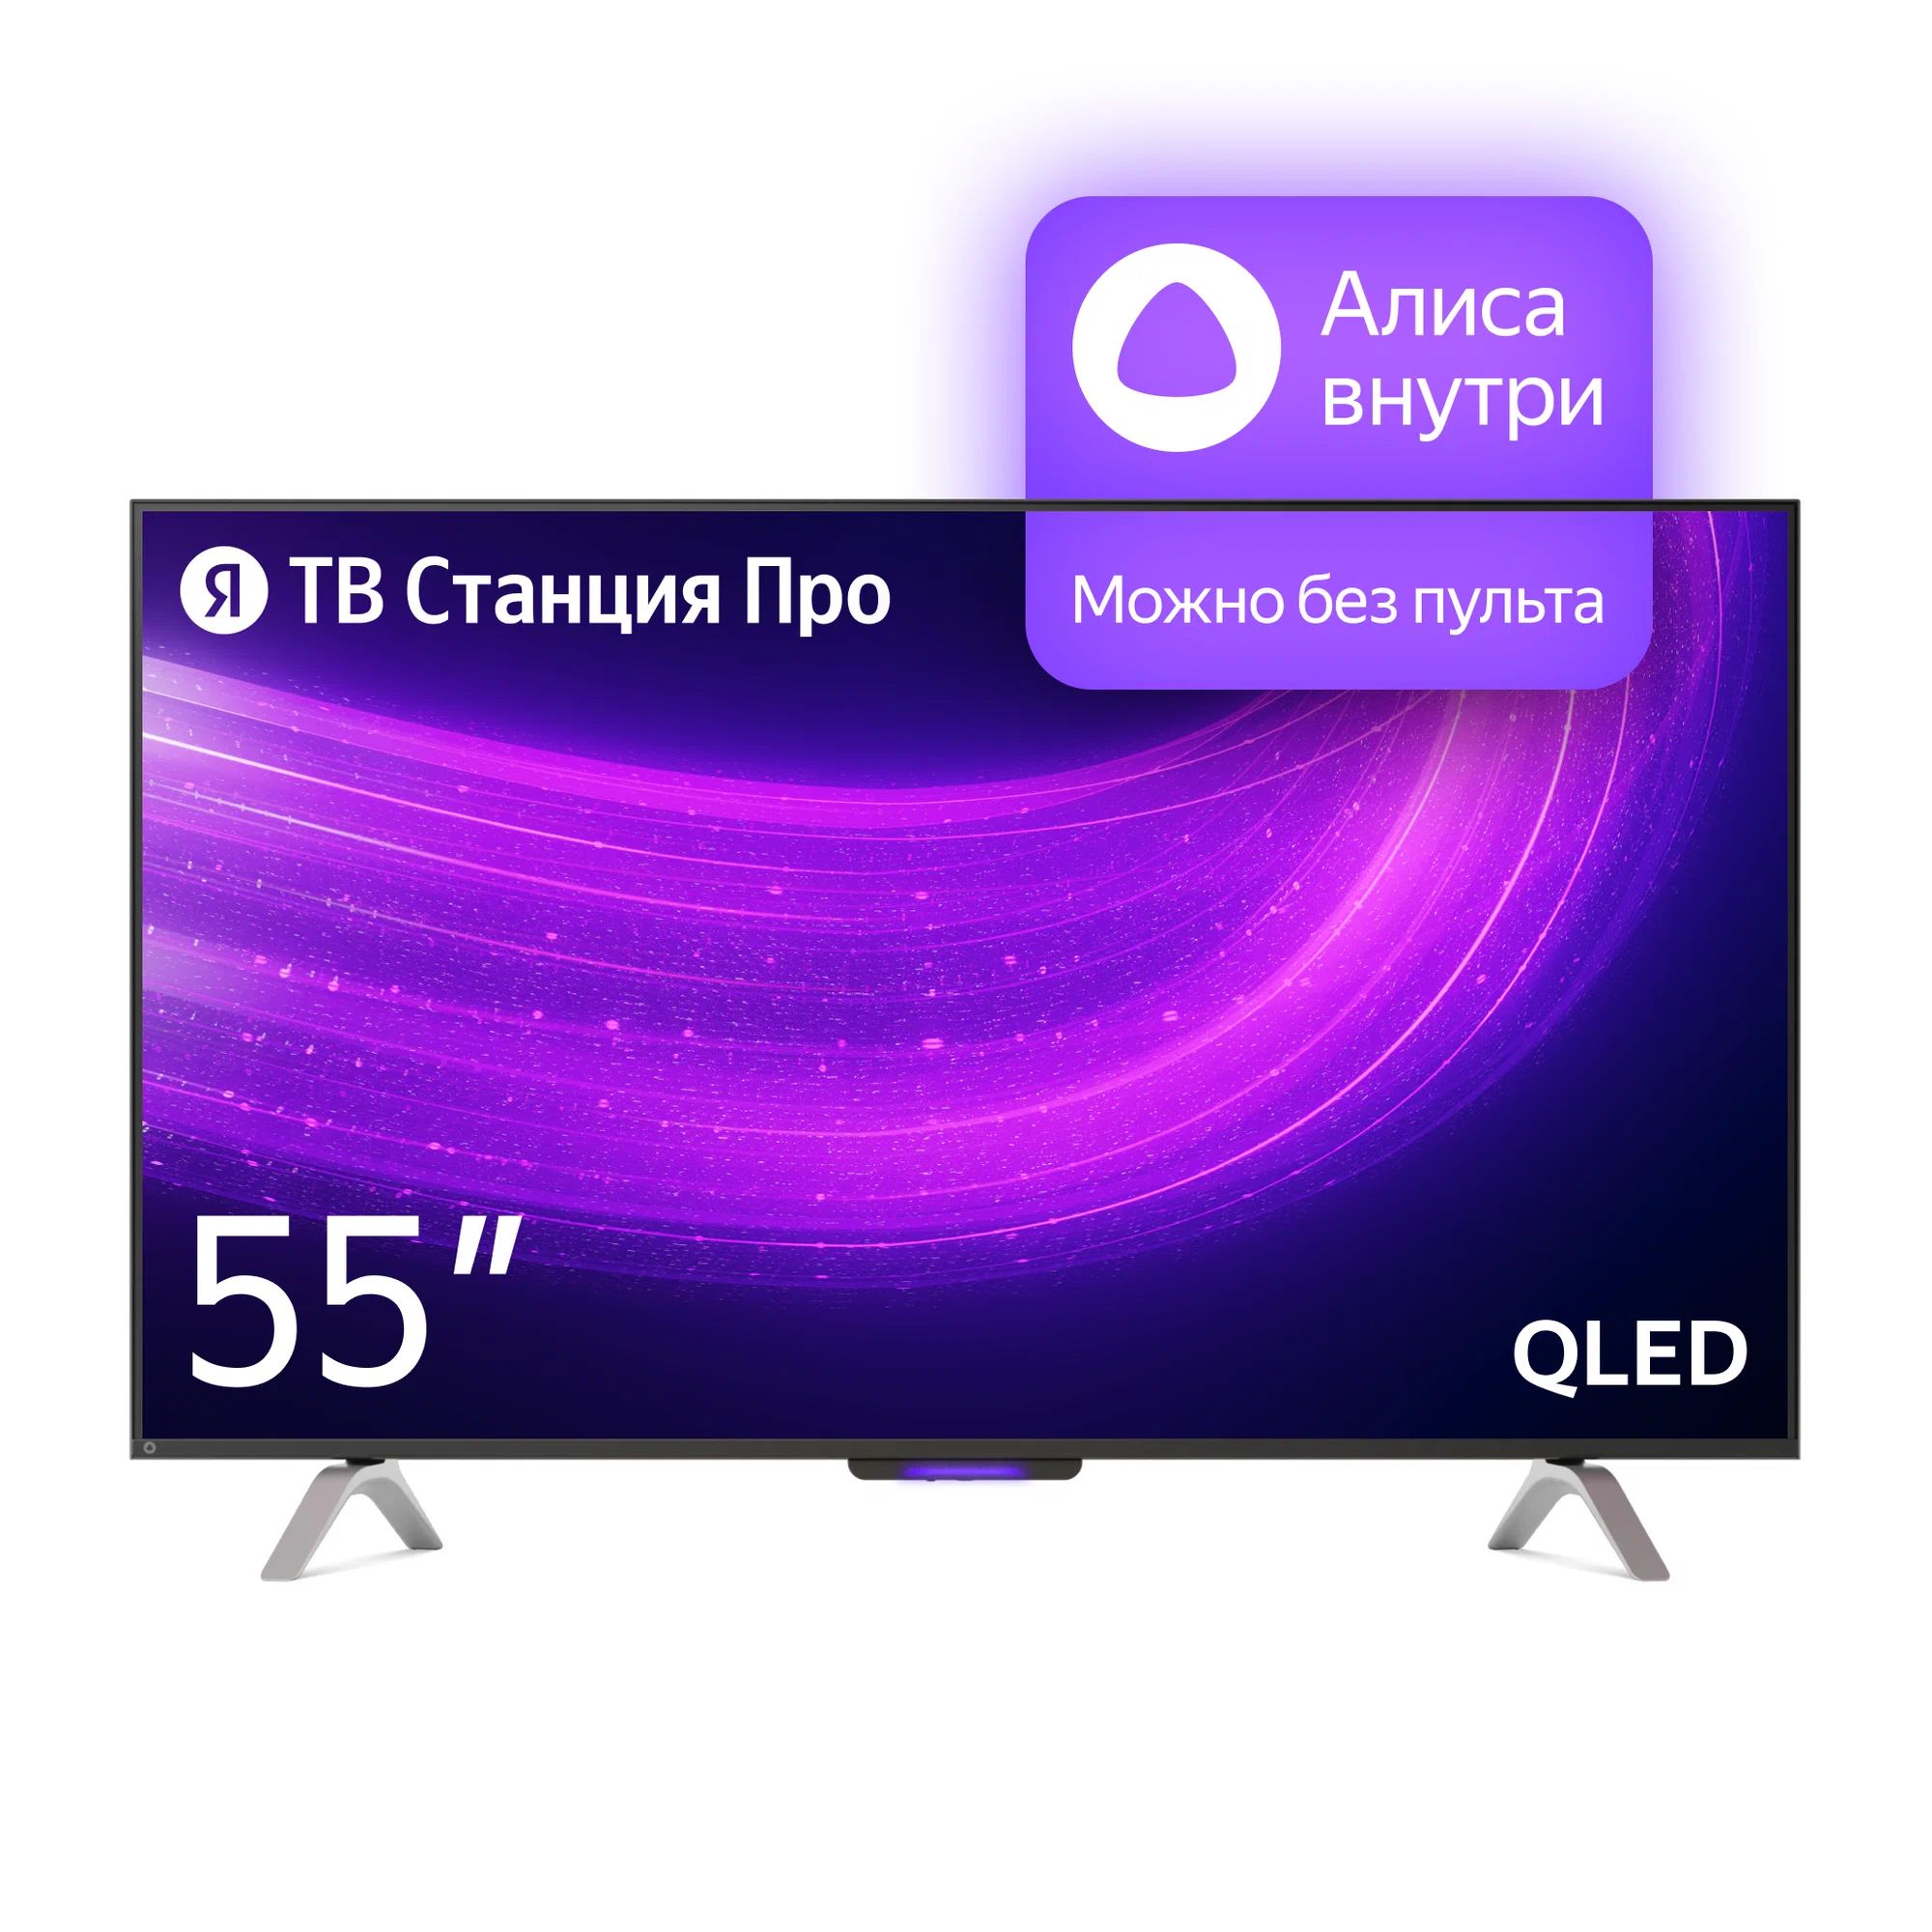 Телевизор Яндекс YNDX-00101 PRO Тв станция с Алисой 55 телевизор яндекс 50 тв станция с алисой yndx 00092